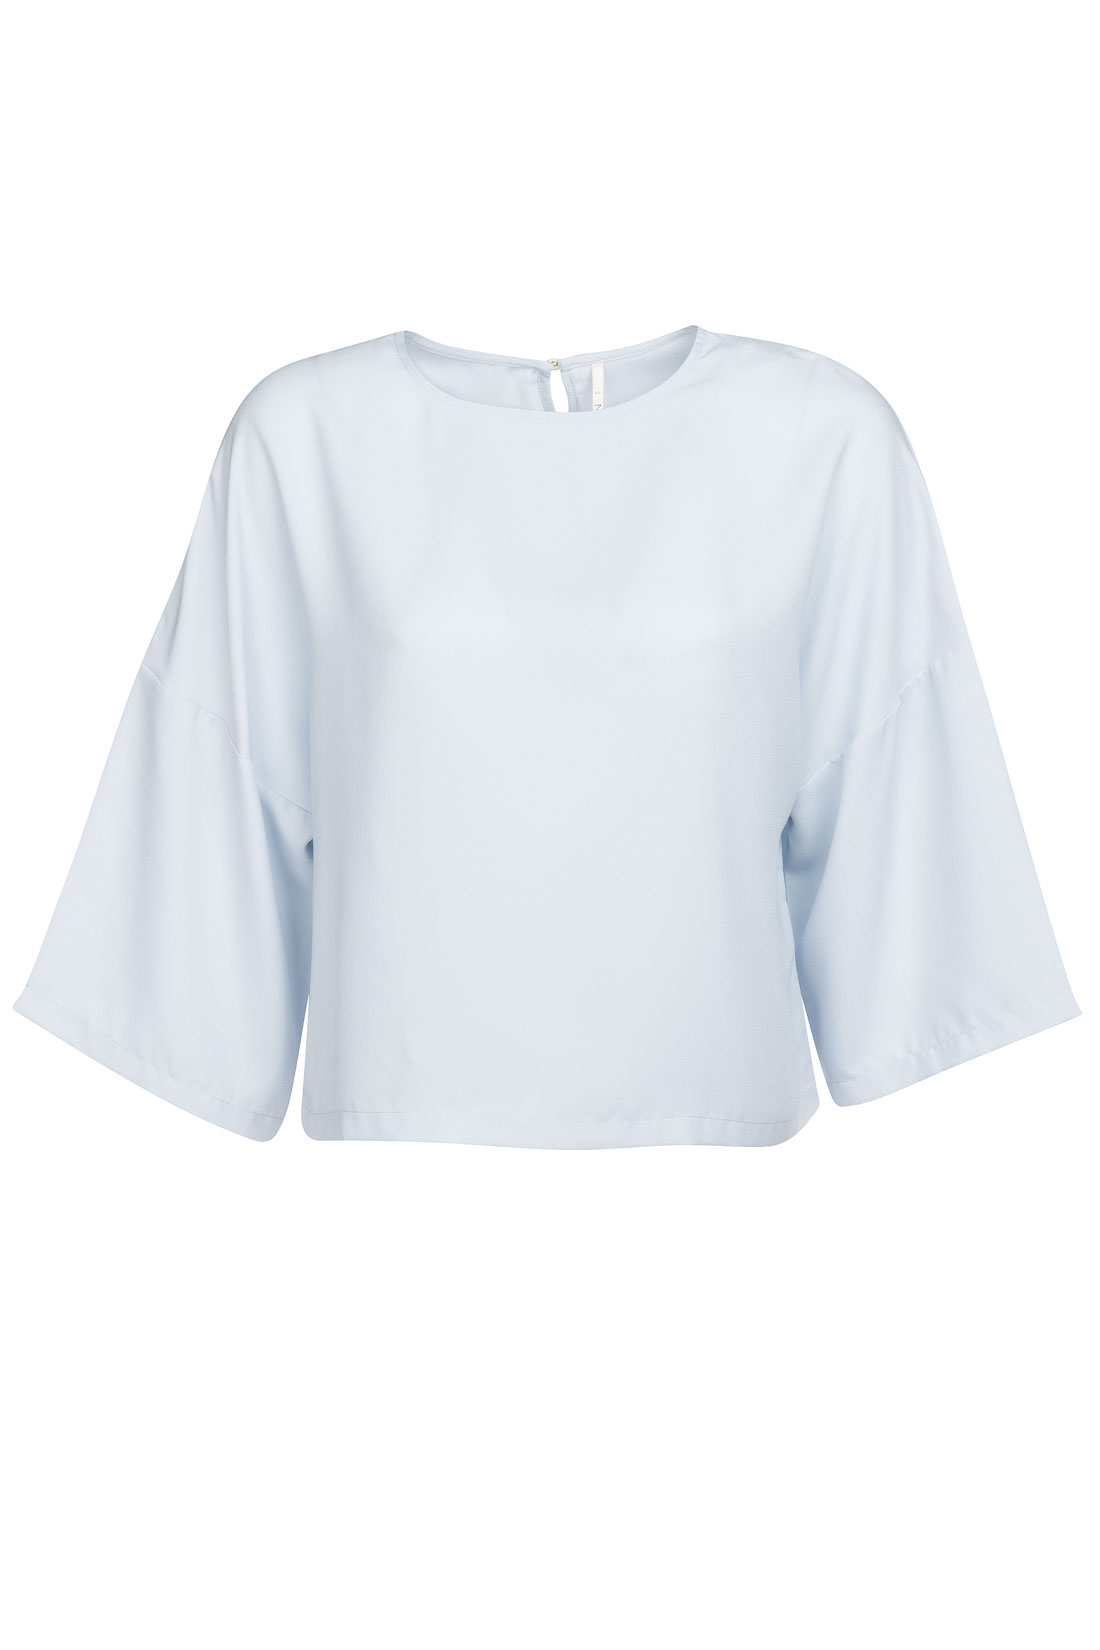 Блузка свободного кроя (арт. baon B197030), размер XXL, цвет голубой Блузка свободного кроя (арт. baon B197030) - фото 4